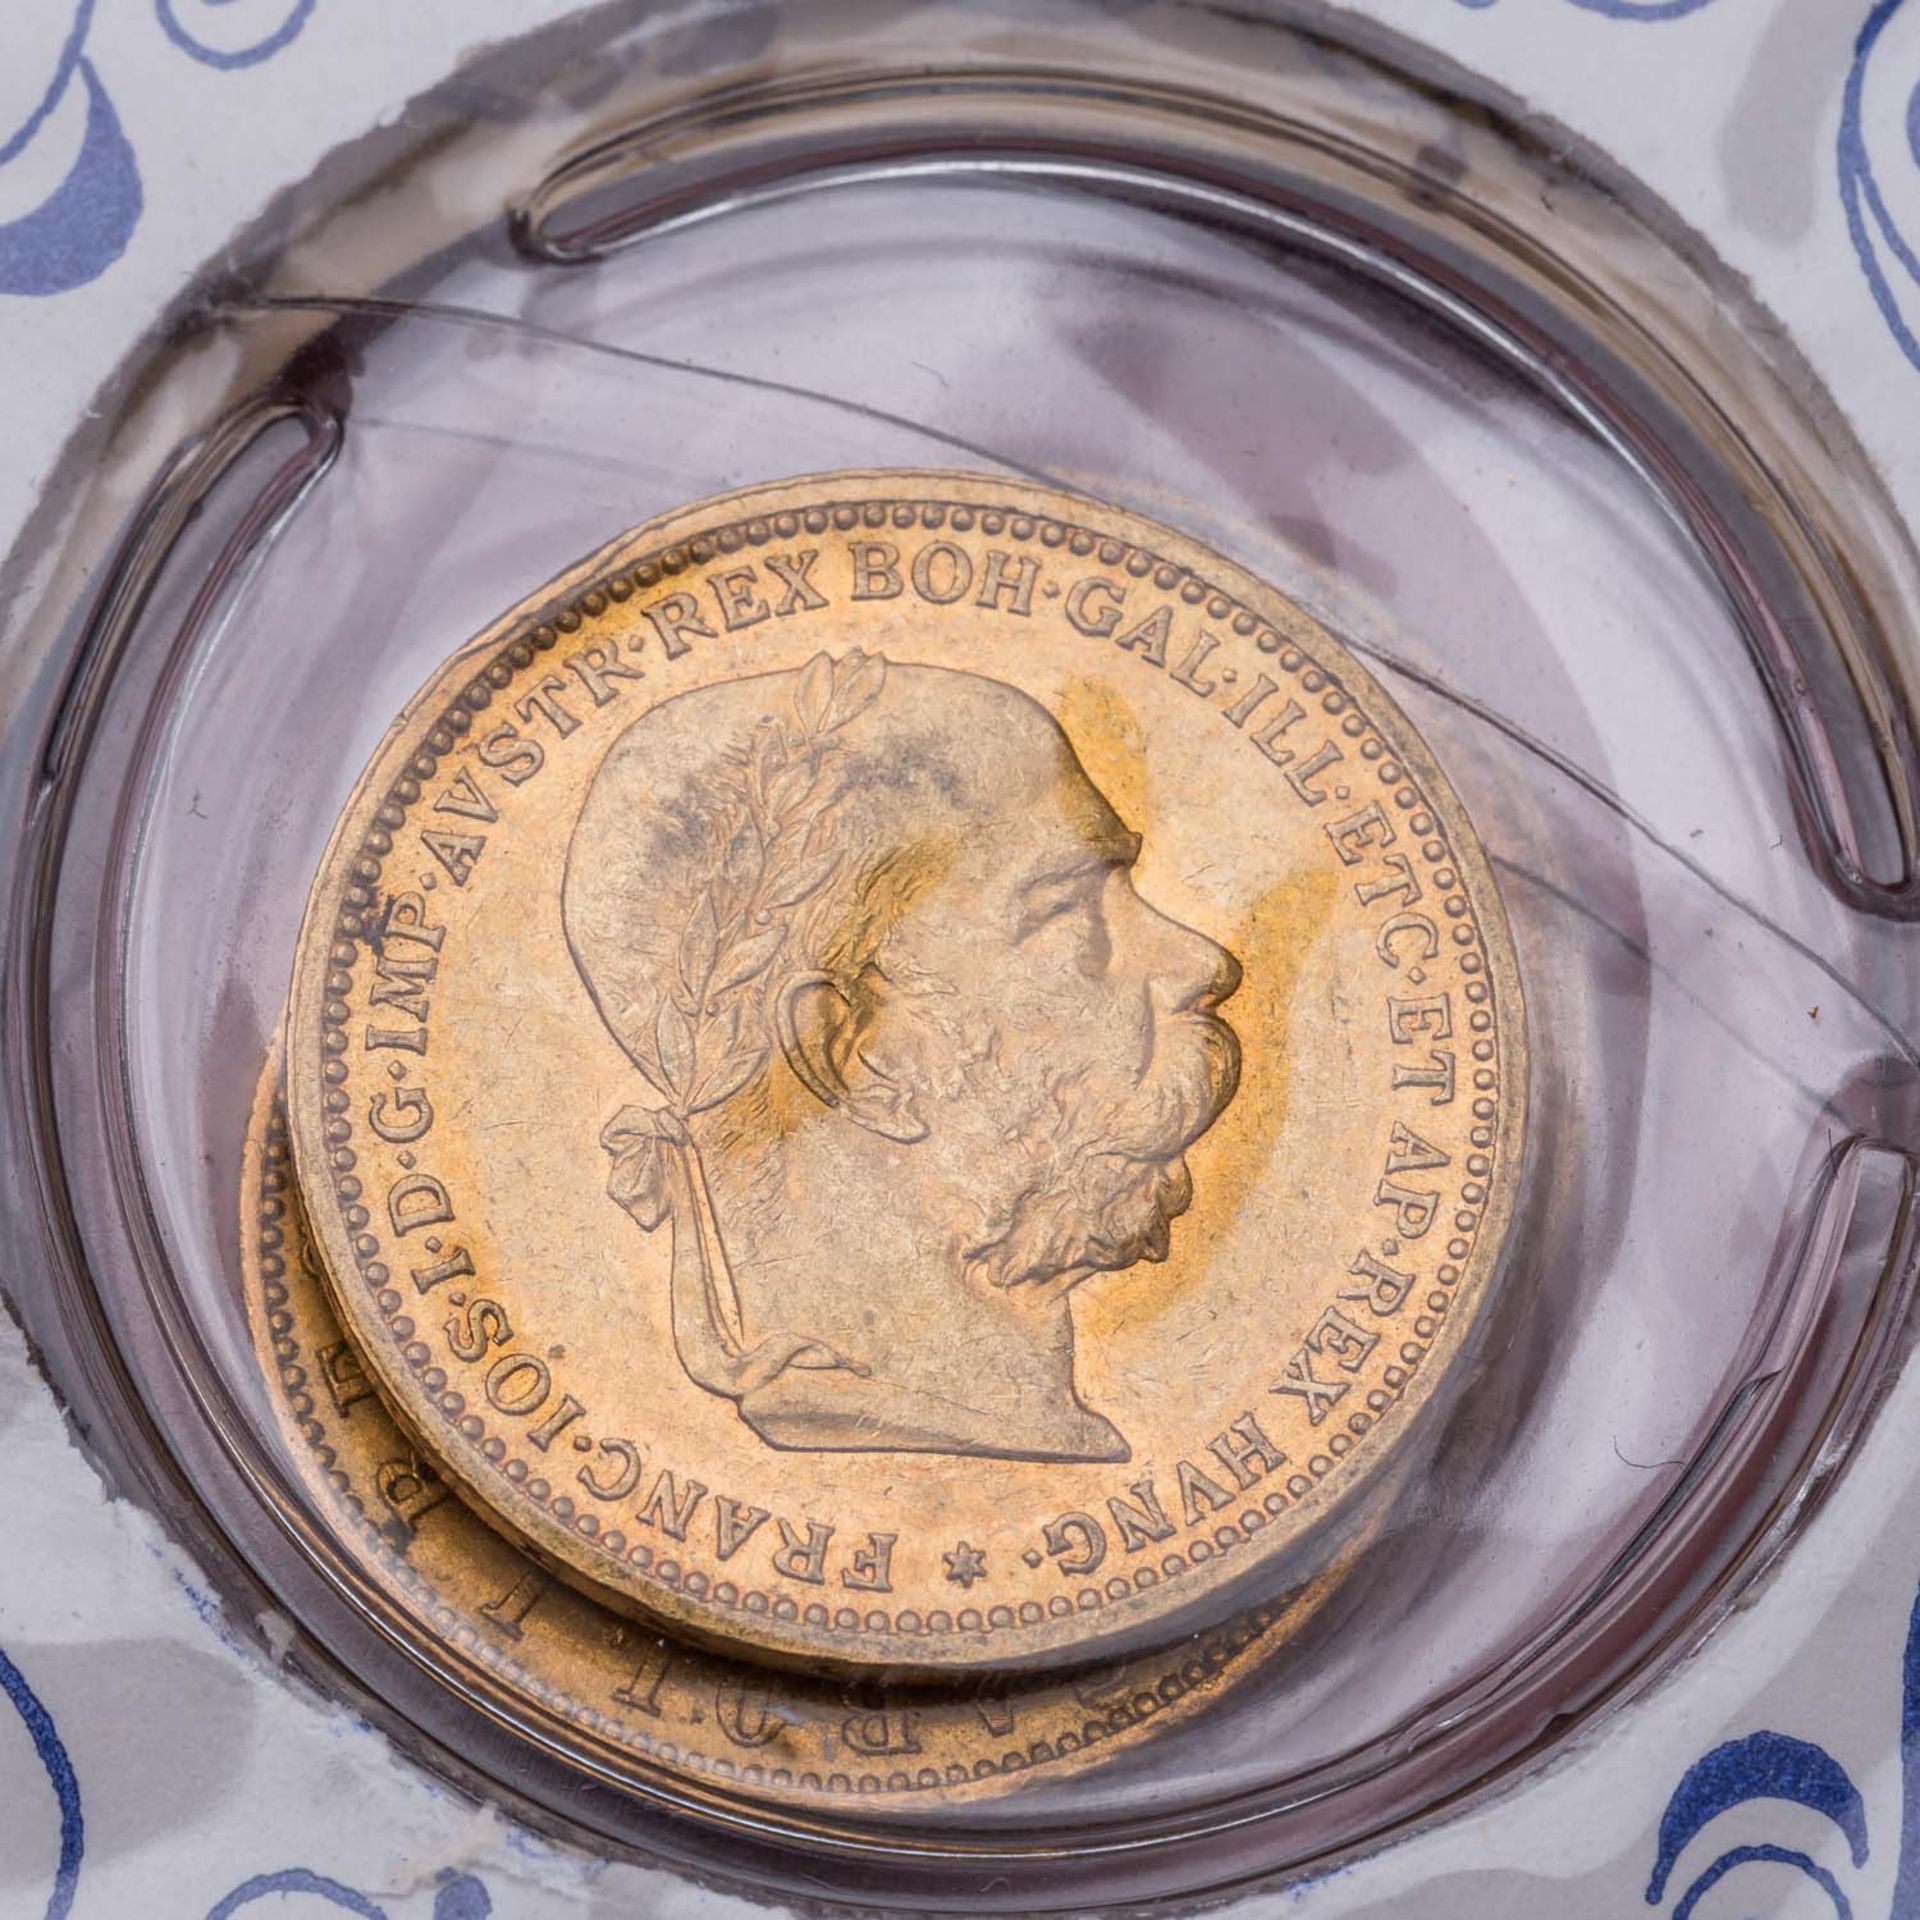 GOLD - Goldmünzen aus Europa und Nordamerika in 3 Alben. 49 Stück. - Bild 4 aus 9